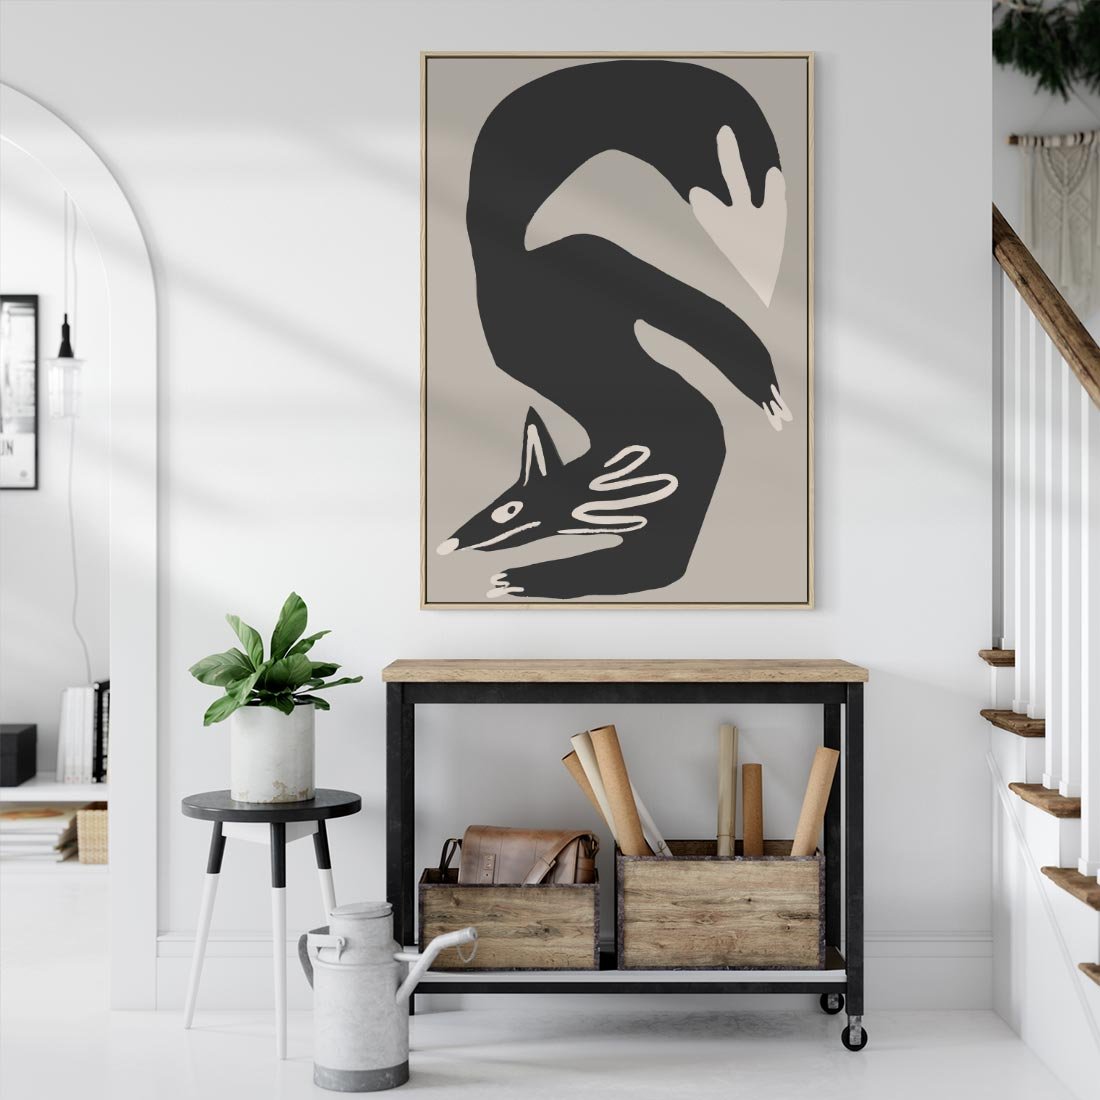 Obraz w ramie 50x70 - Ekspresja Skandynawskiego Światła - skandynawska sztuka, lis - rama drewno